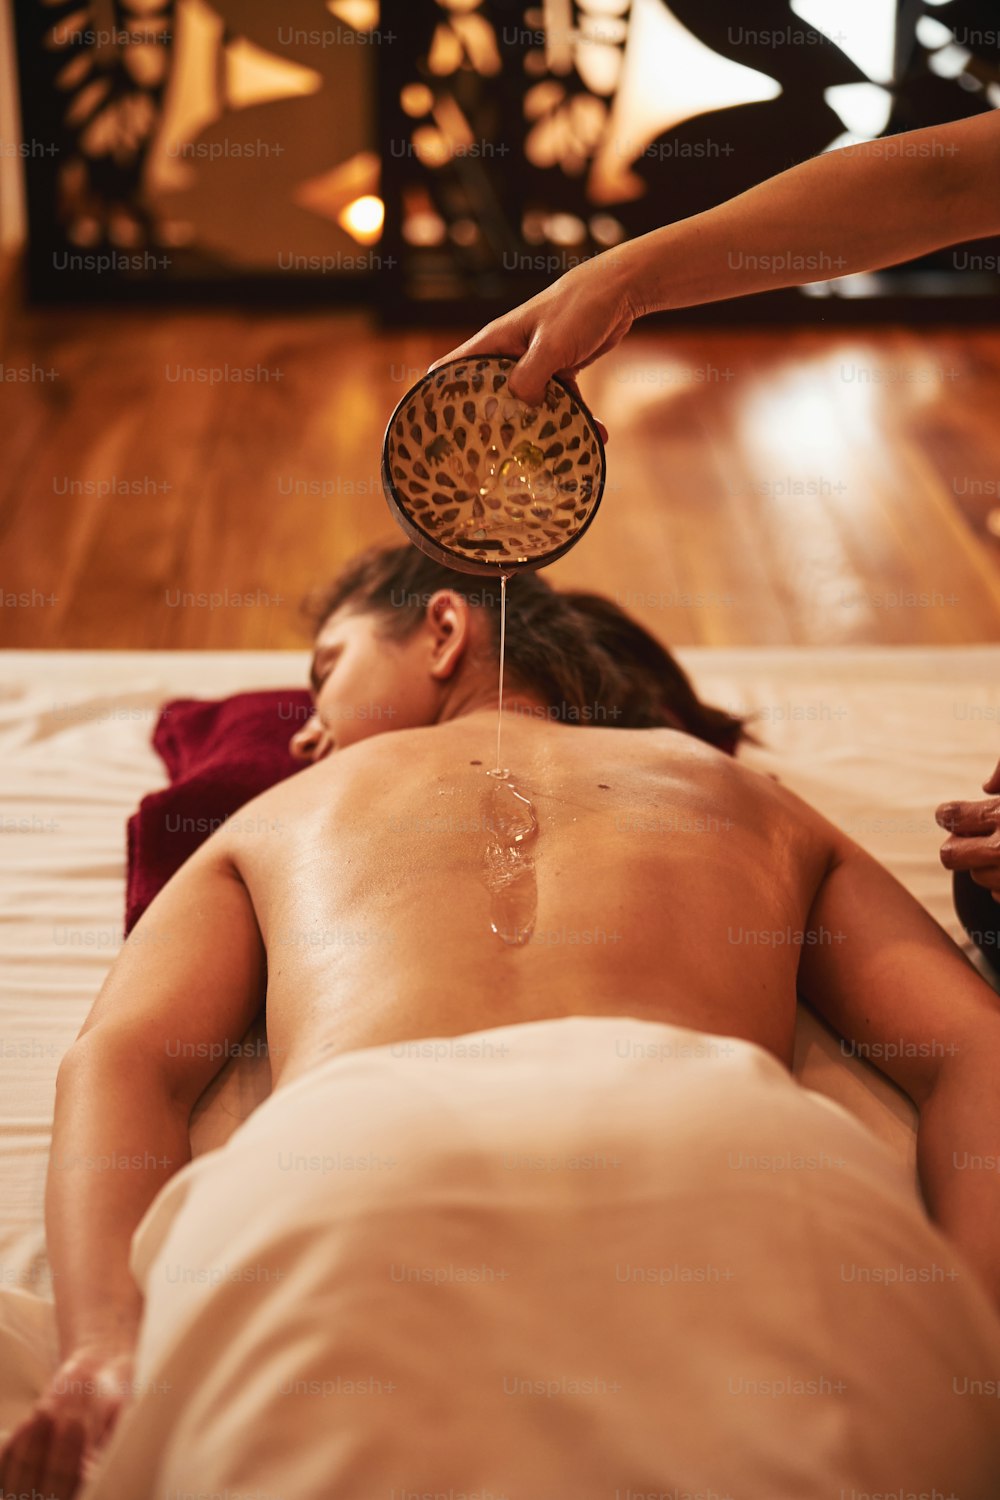 スパサロンの床のベッドに横たわっている女性の体にマッサージオイルで皿を回すマッサージ師の手